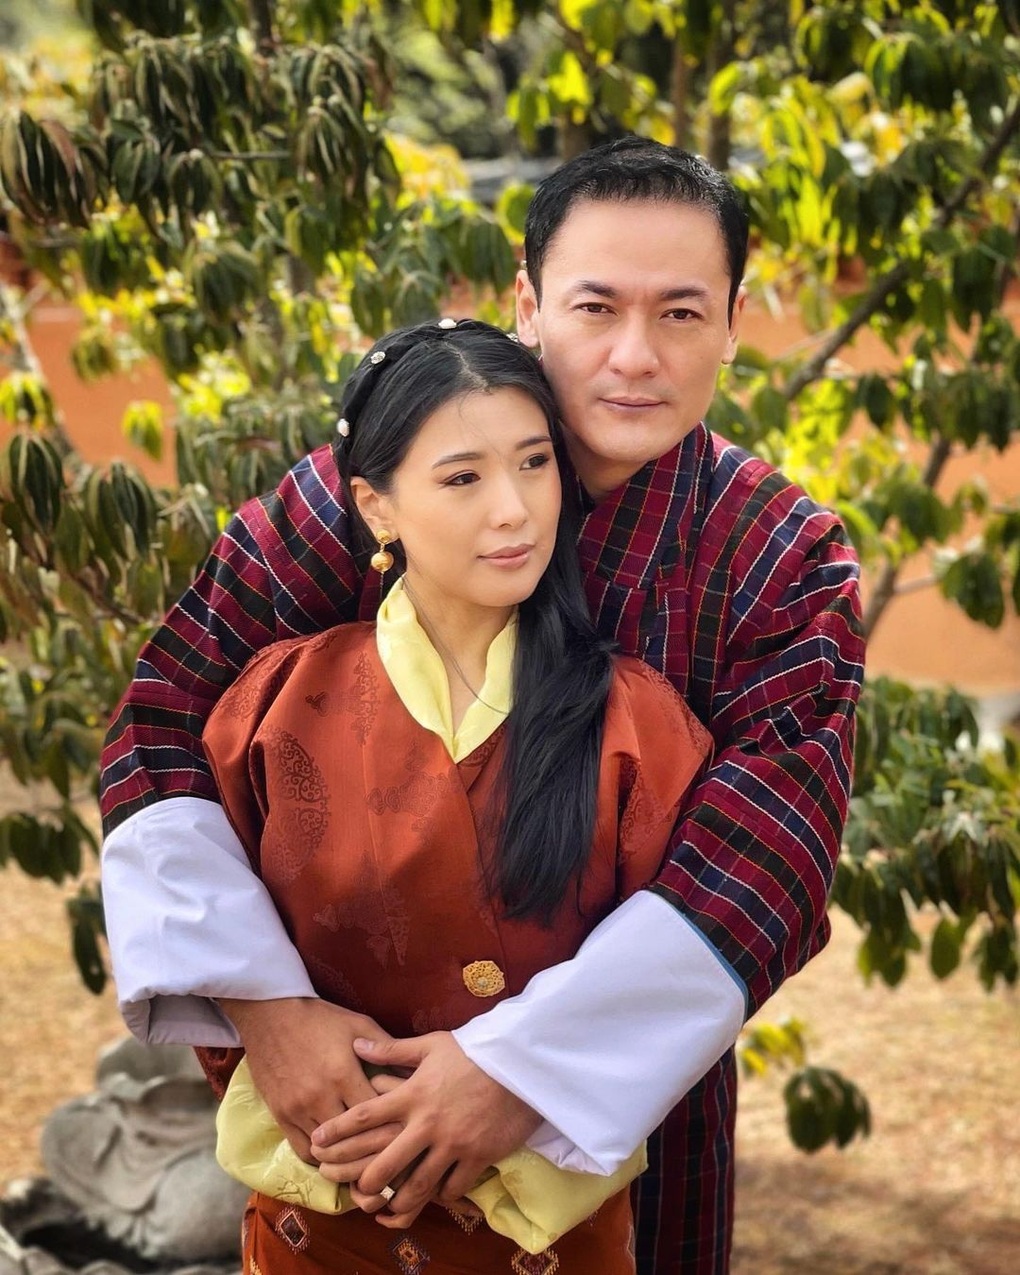 Em gái xinh đẹp, sống kín tiếng của Quốc vương Bhutan - 8